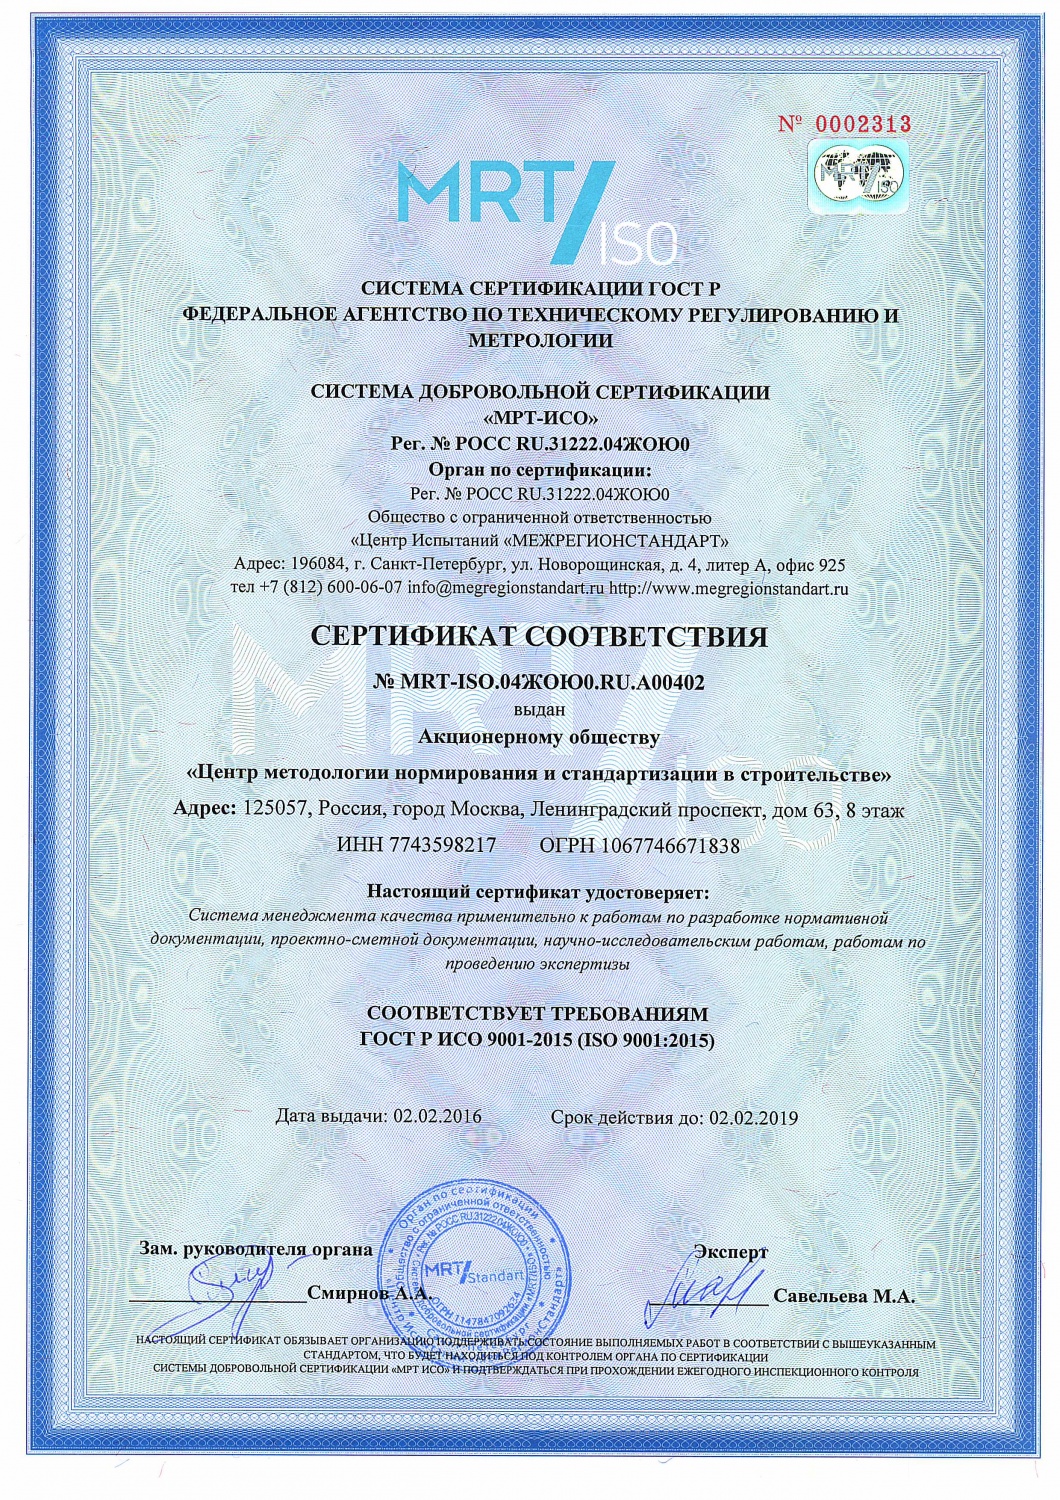 Сертификат контроля качества